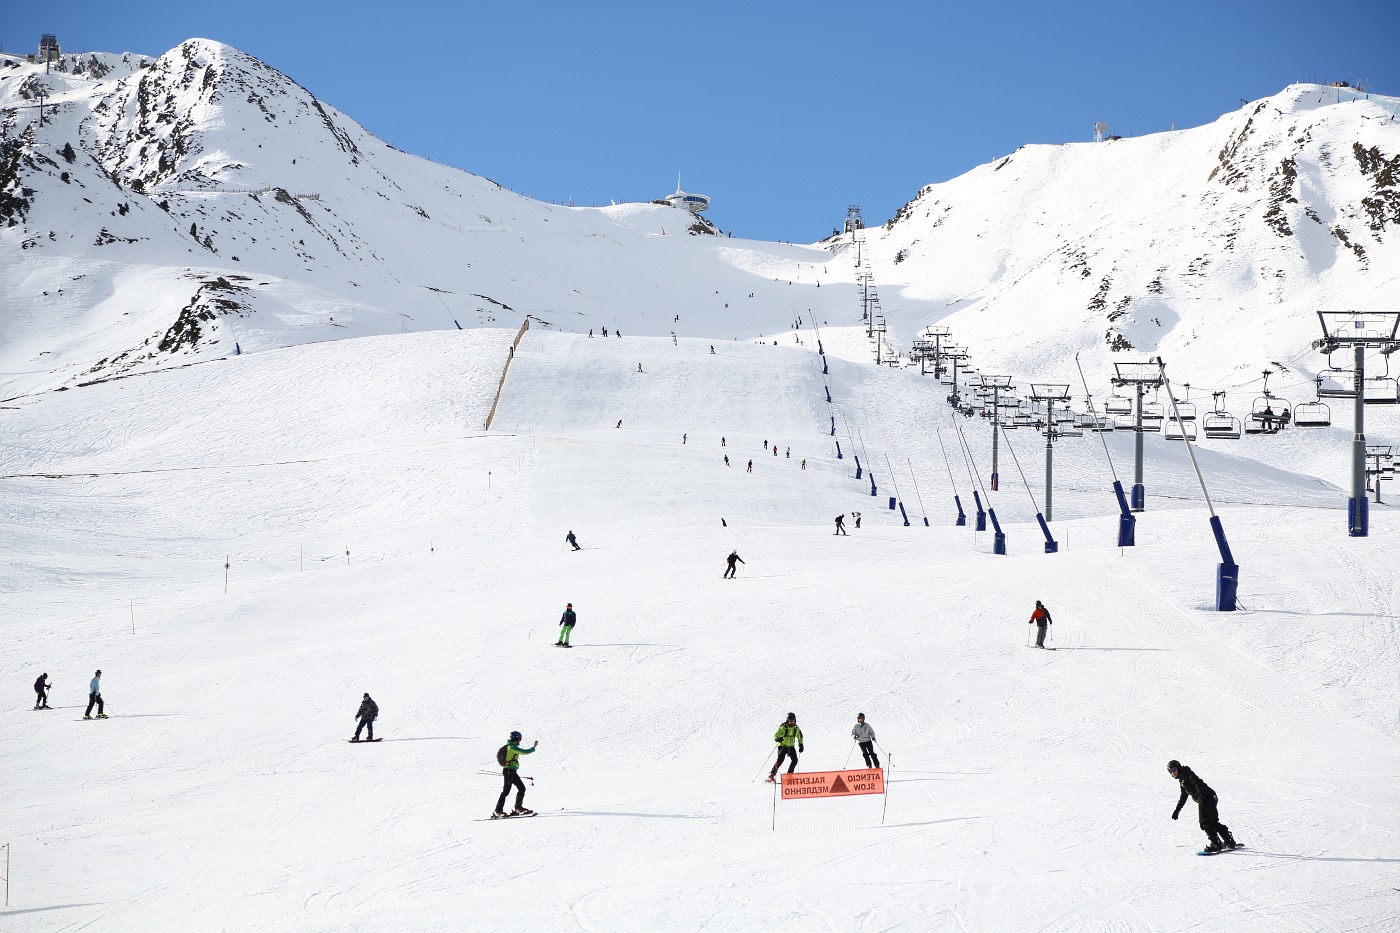 El 85% de la industria del esquí cree que las estaciones abrirán la temporada de 2020-21